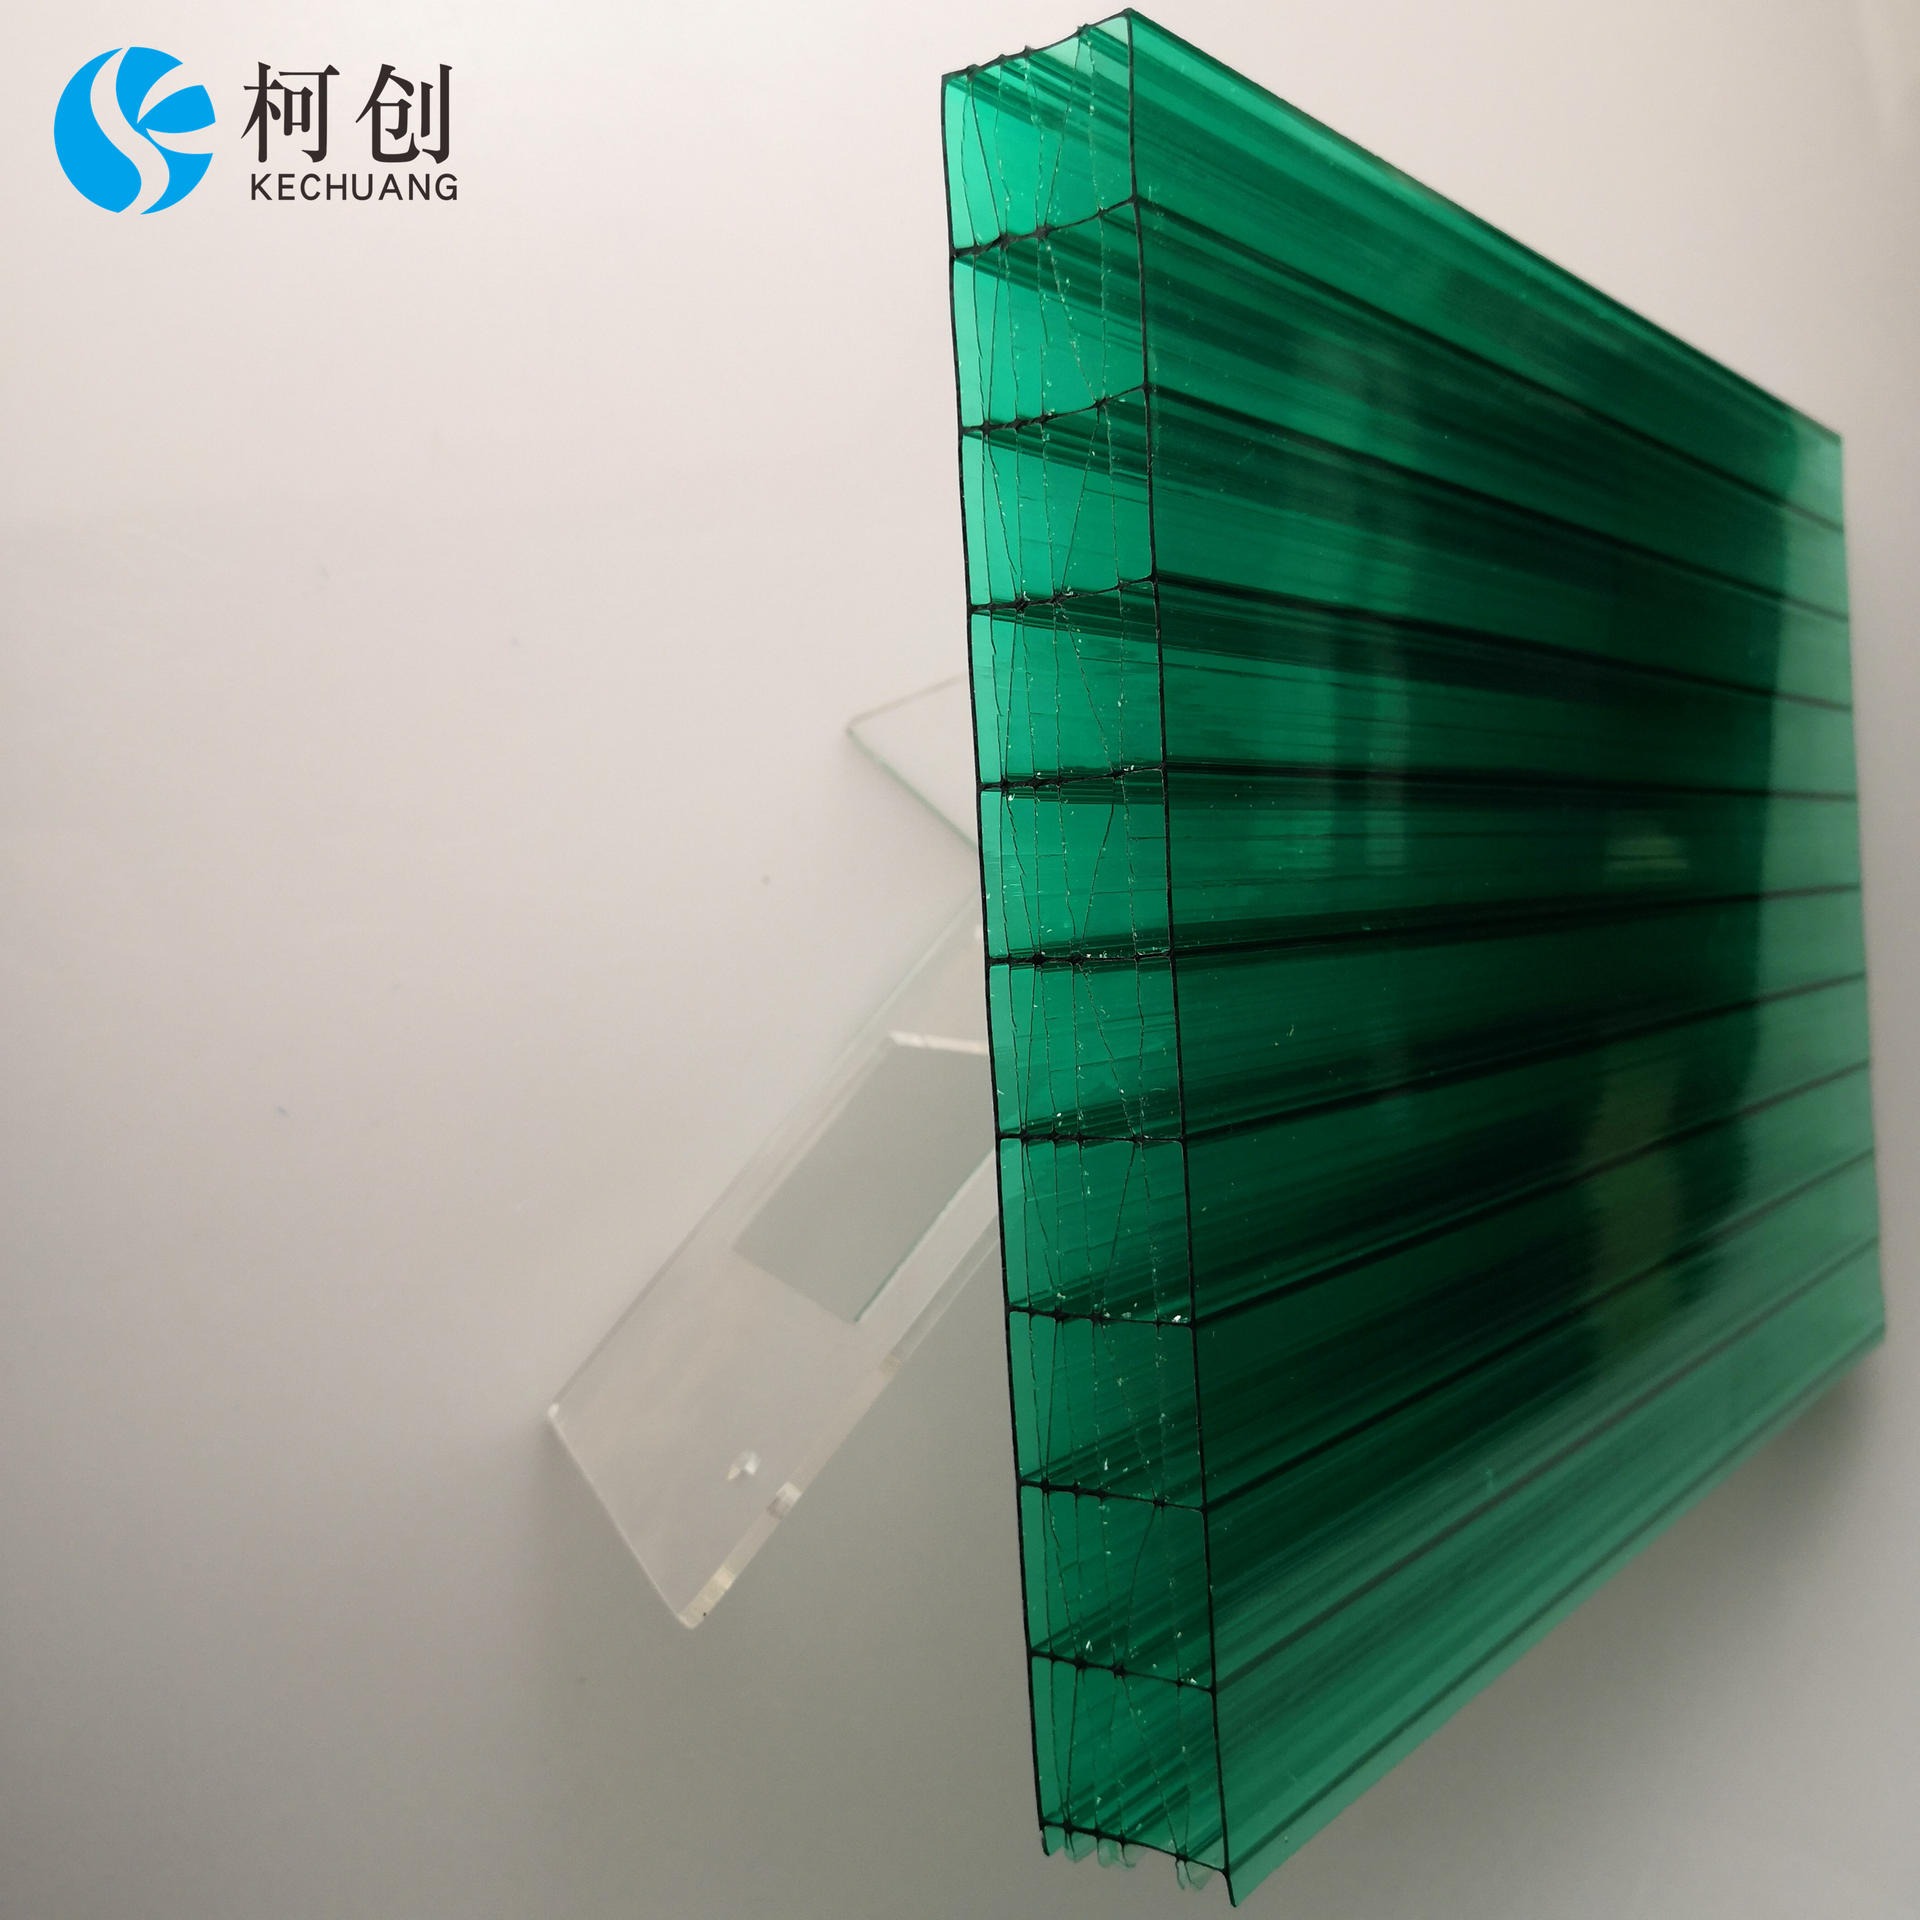 柯创多层米字格PC阳光板12mm  聚碳酸酯阳光板草绿透明全新原料  支持定制隔音隔热易安装